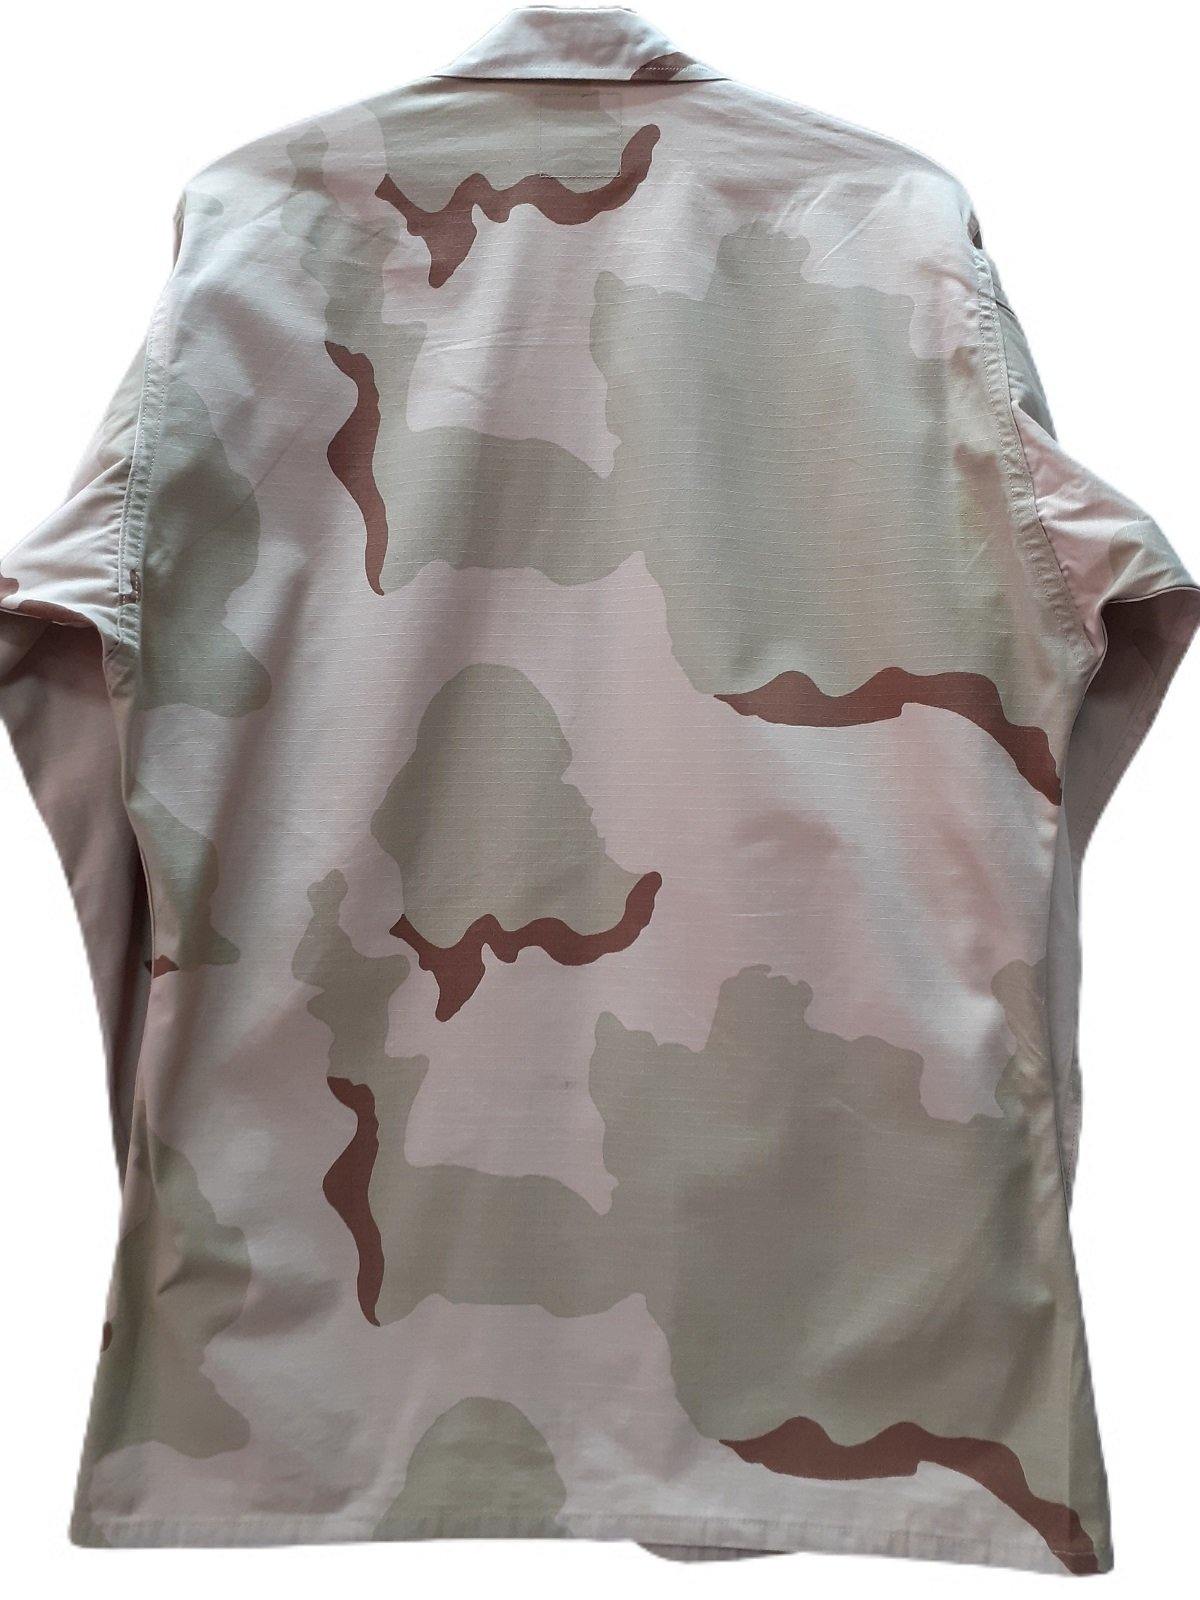 Costum Camuflaj - Desert 3 culori (SH) - Surplus Militar